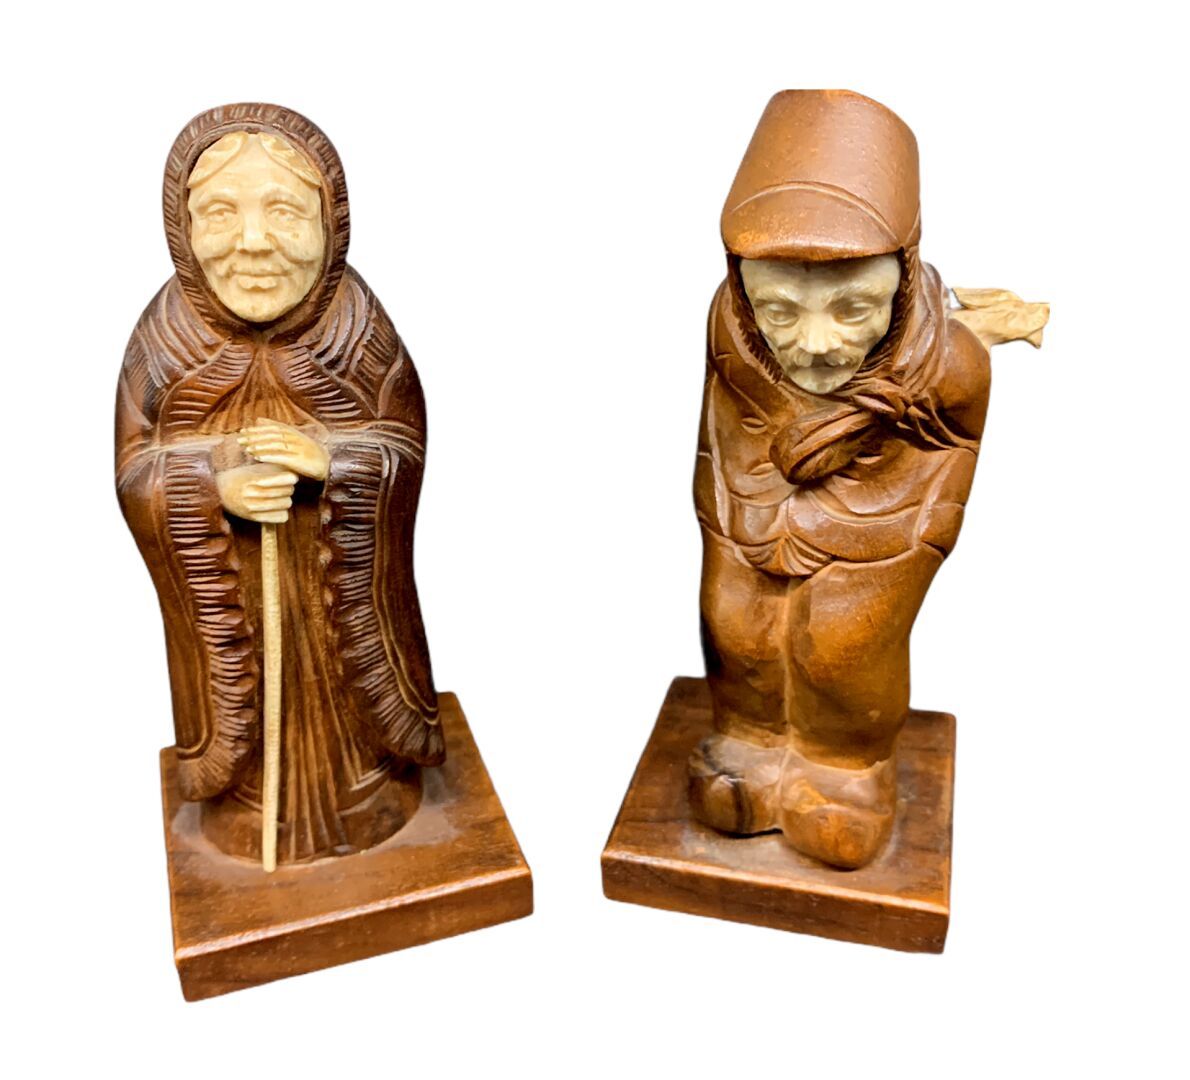 Null Paire de sujets figurant un couple 

Bois et ivoire sculptés 

H. 7 cm